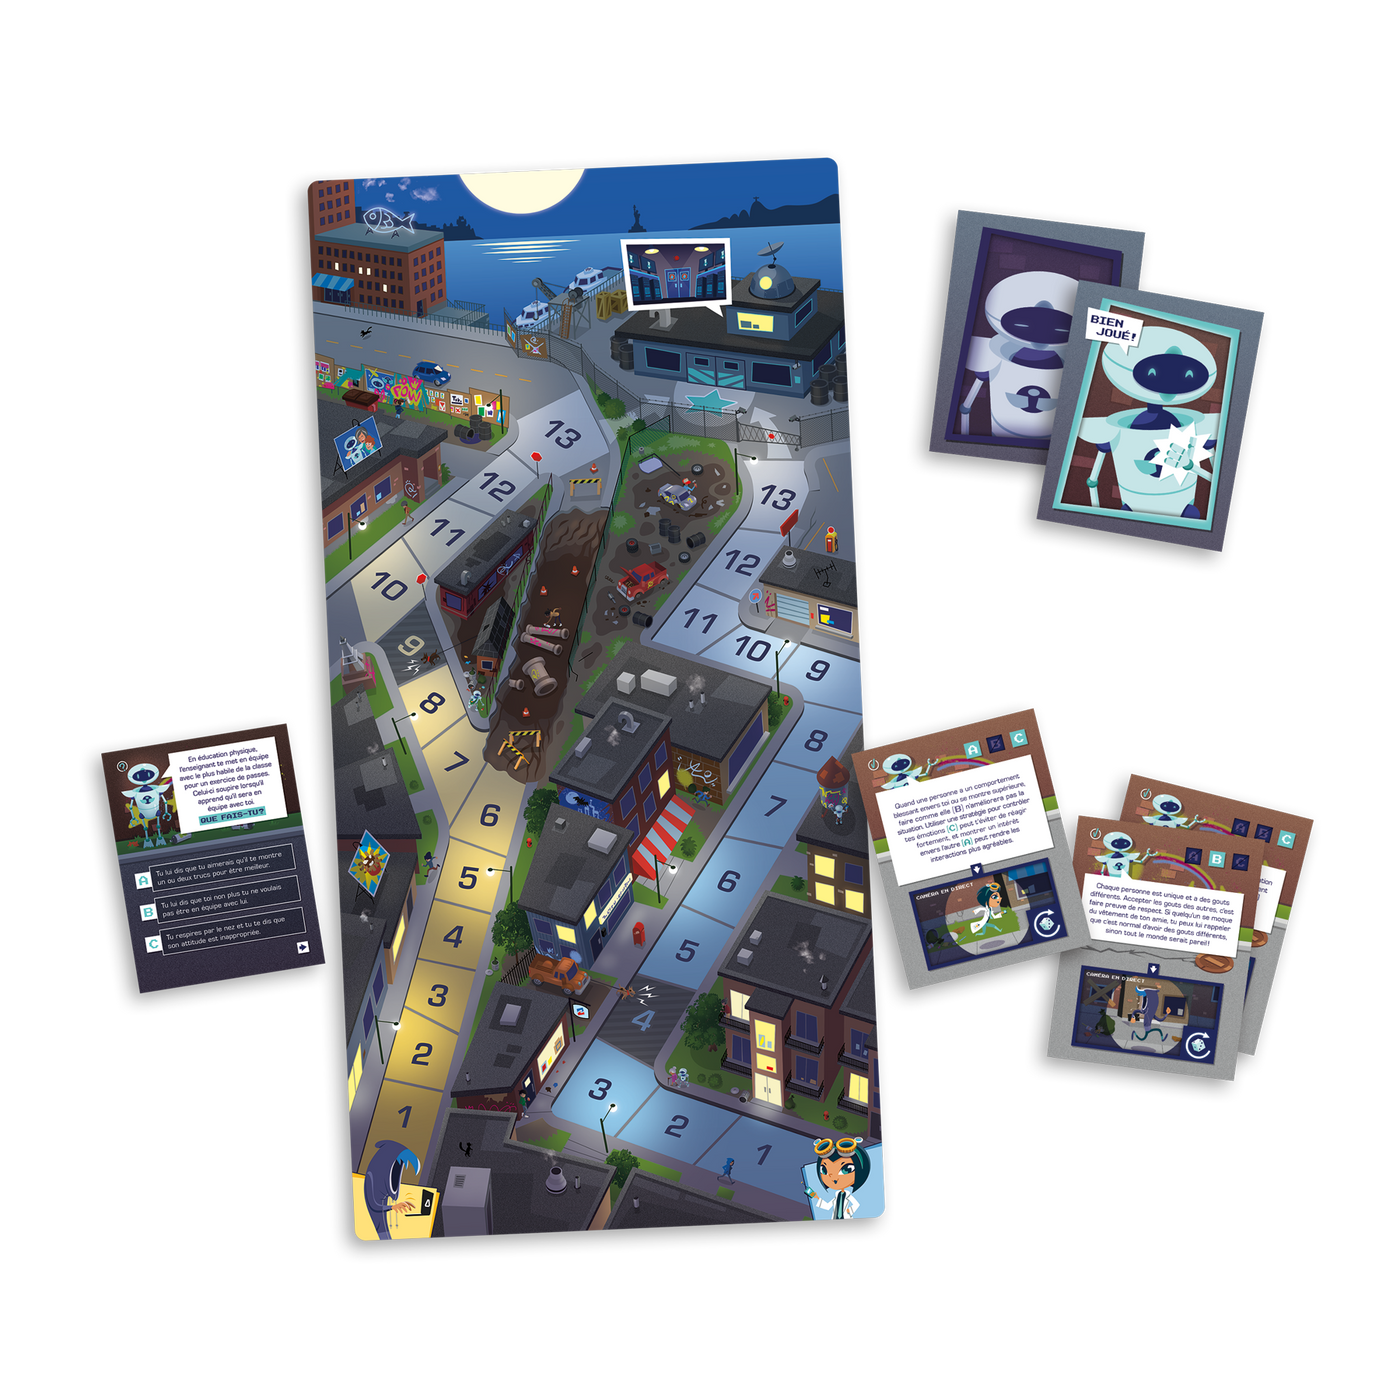 Le code social - Planche de jeu (ville nocturne), exemples de cartes-questions, cartes-défis et cartes « Bien joué! »